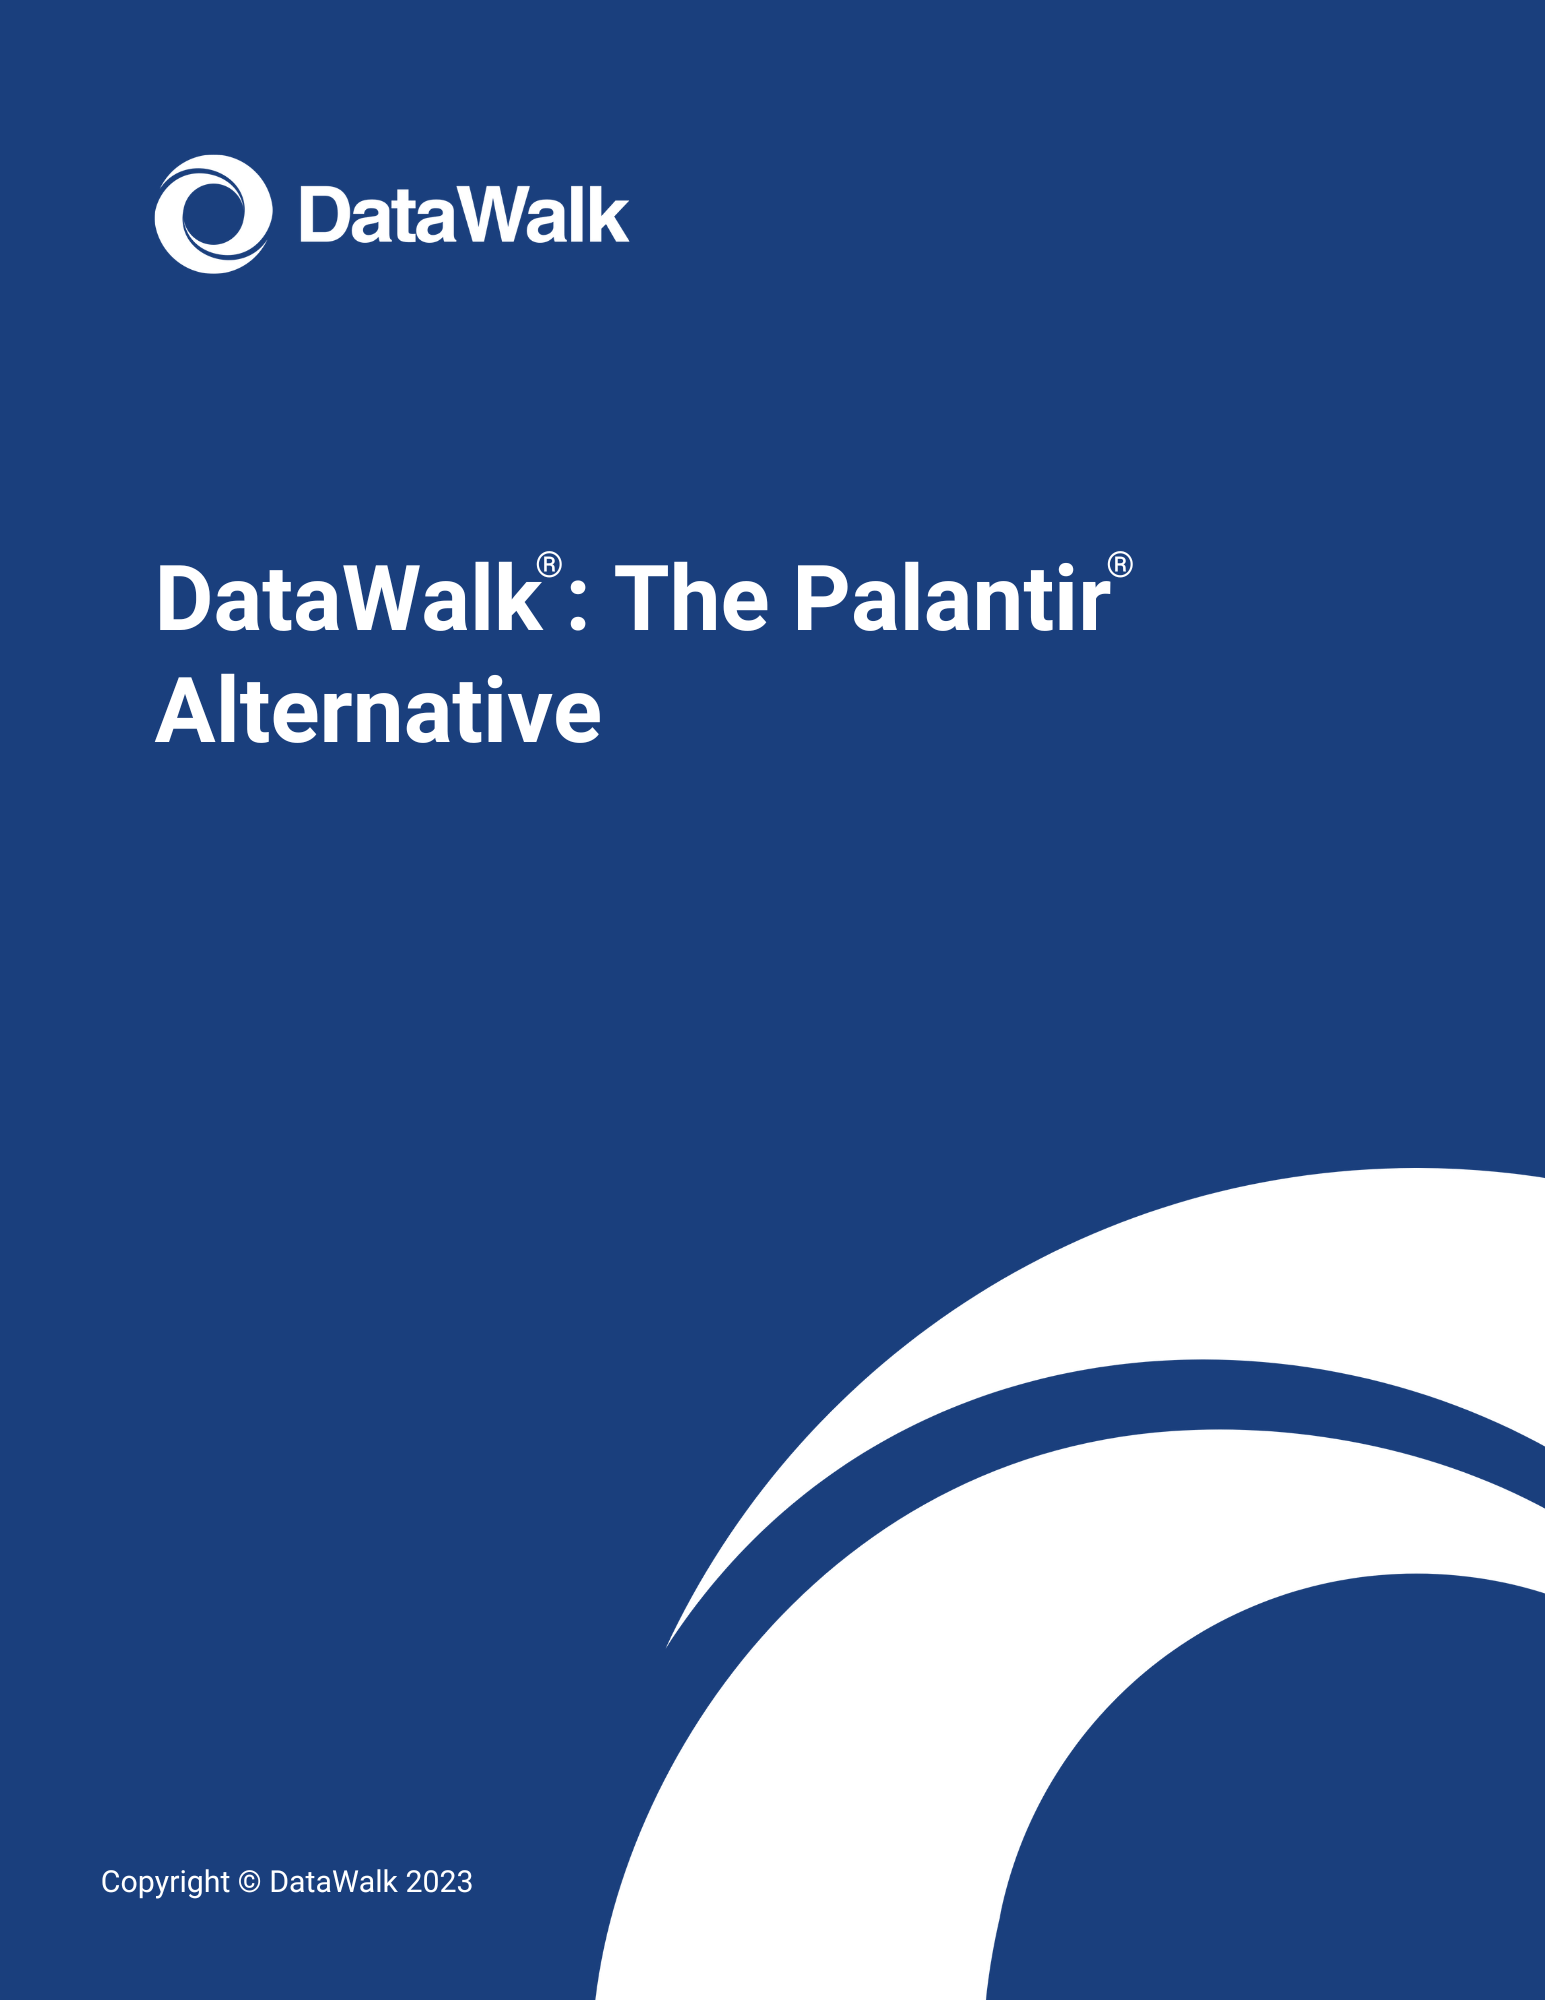 DataWalk The Palantir Alternative (1)